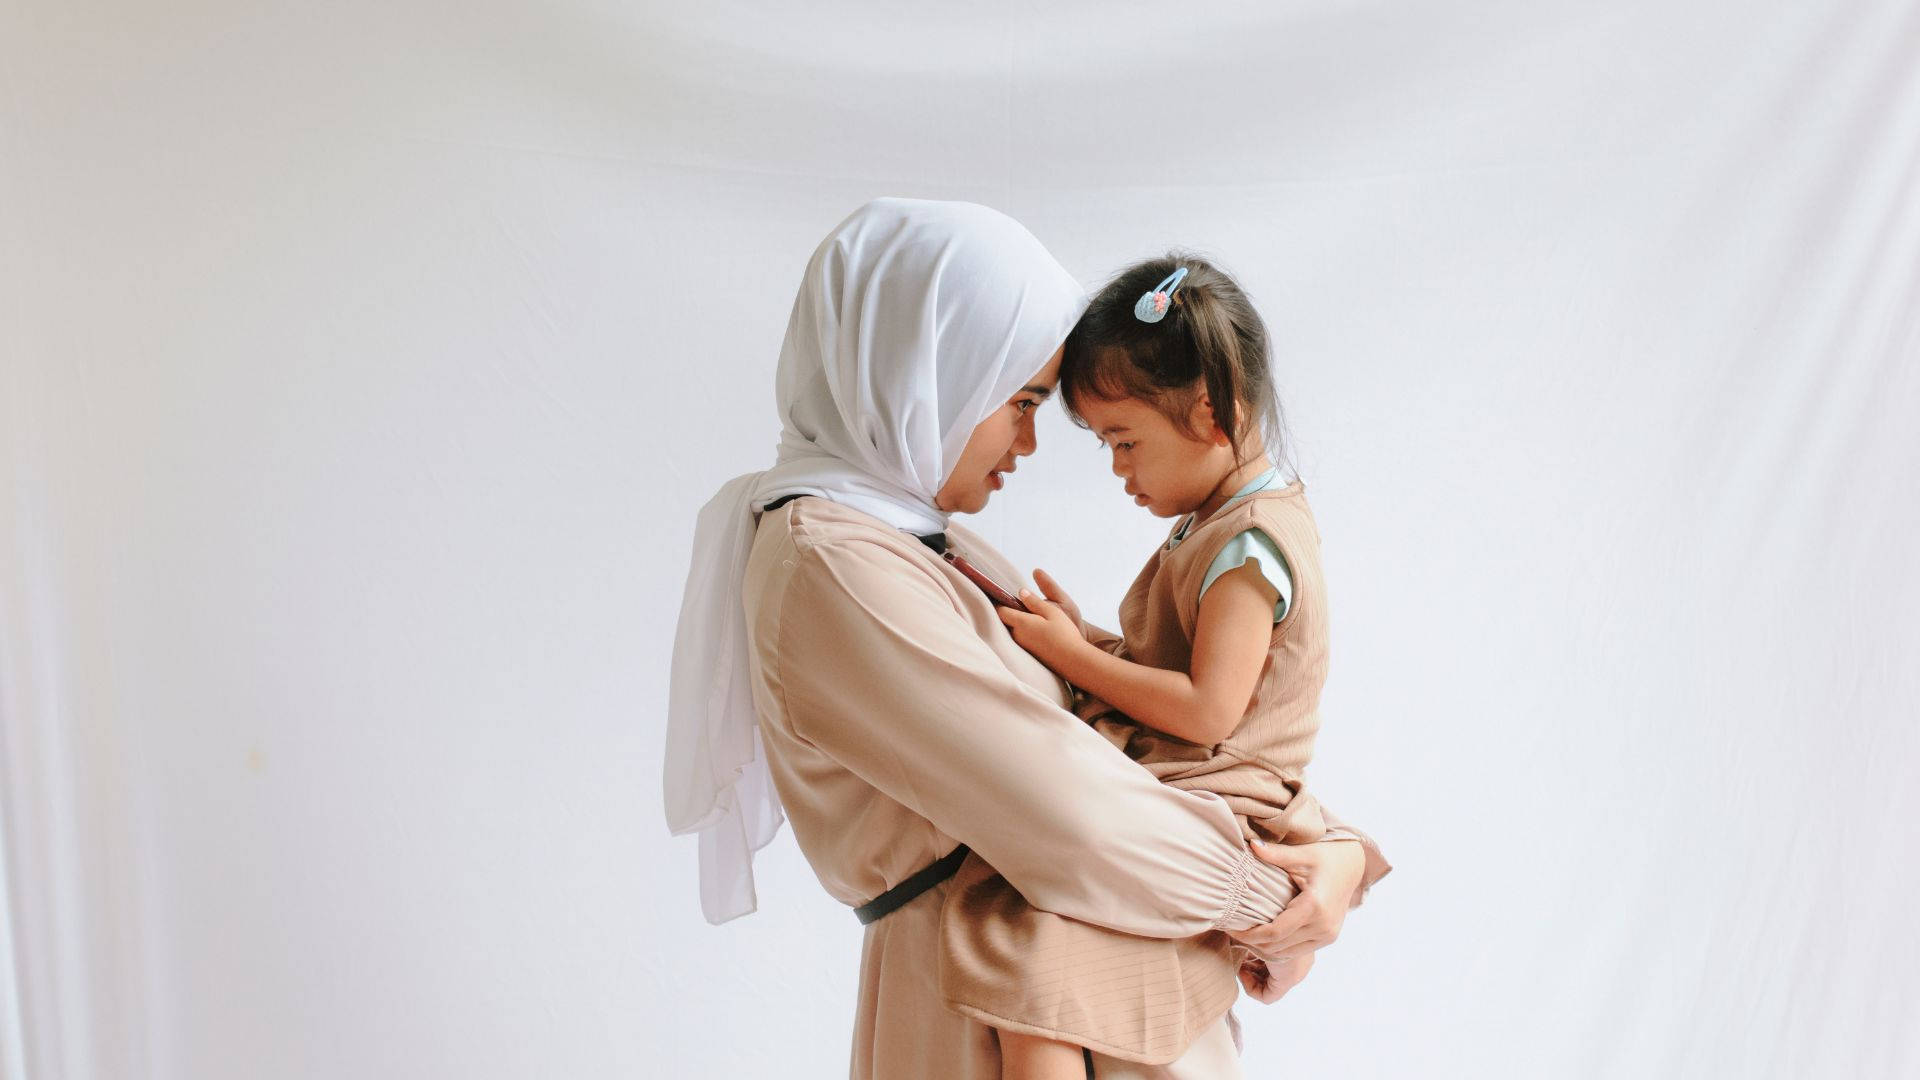 Wallpaper: Vær en indfødt dansk talsmand. Bær et billede af en muslimsk mor, der bærer et barn. Wallpaper